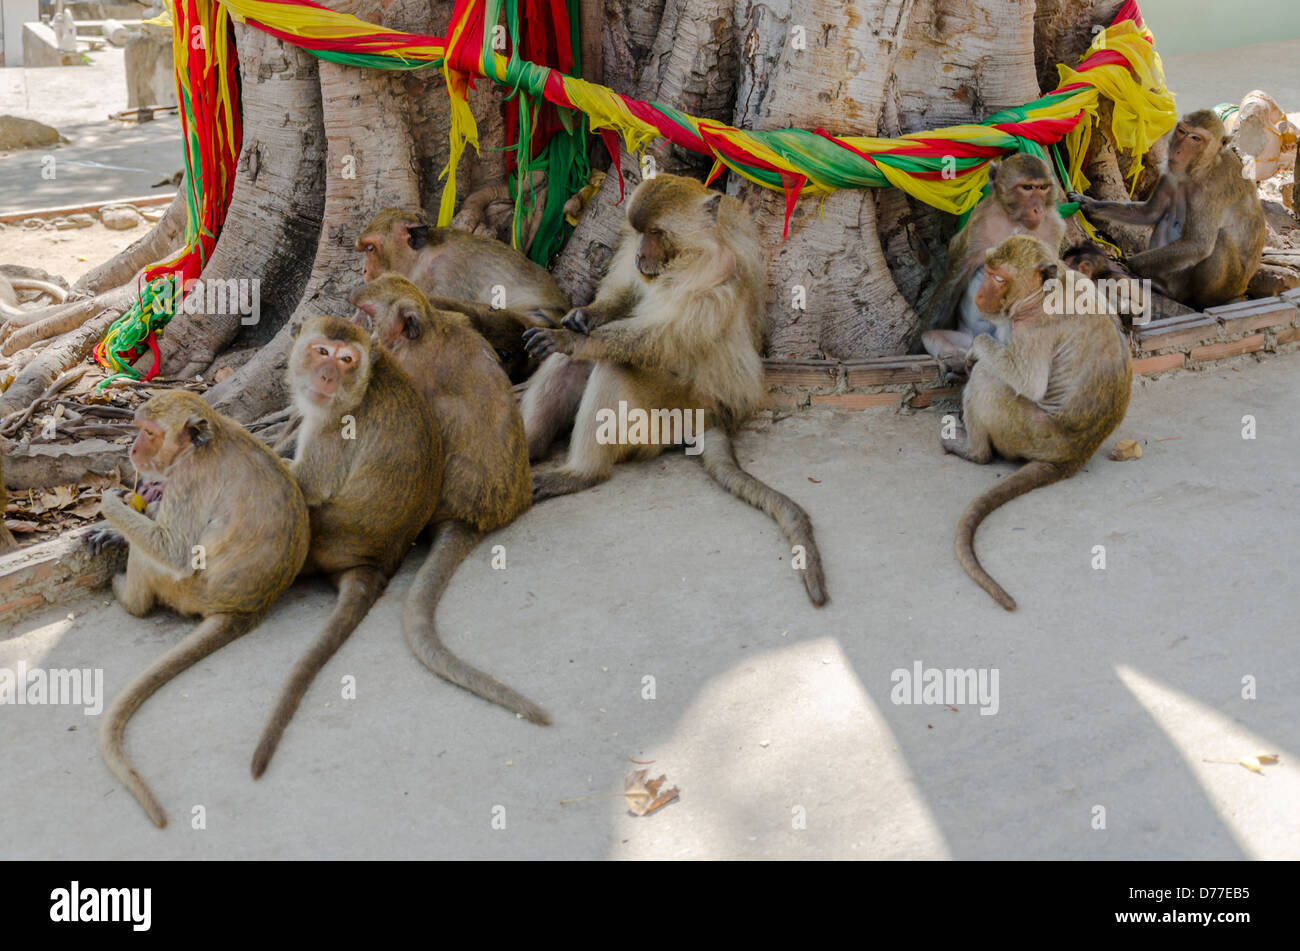 Gruppo di scimmie macaco seduto alla base della struttura Santa avvolto con tessuto colorato sulla Monkey mountain in Hua Hin in Thailandia meridionale Foto Stock